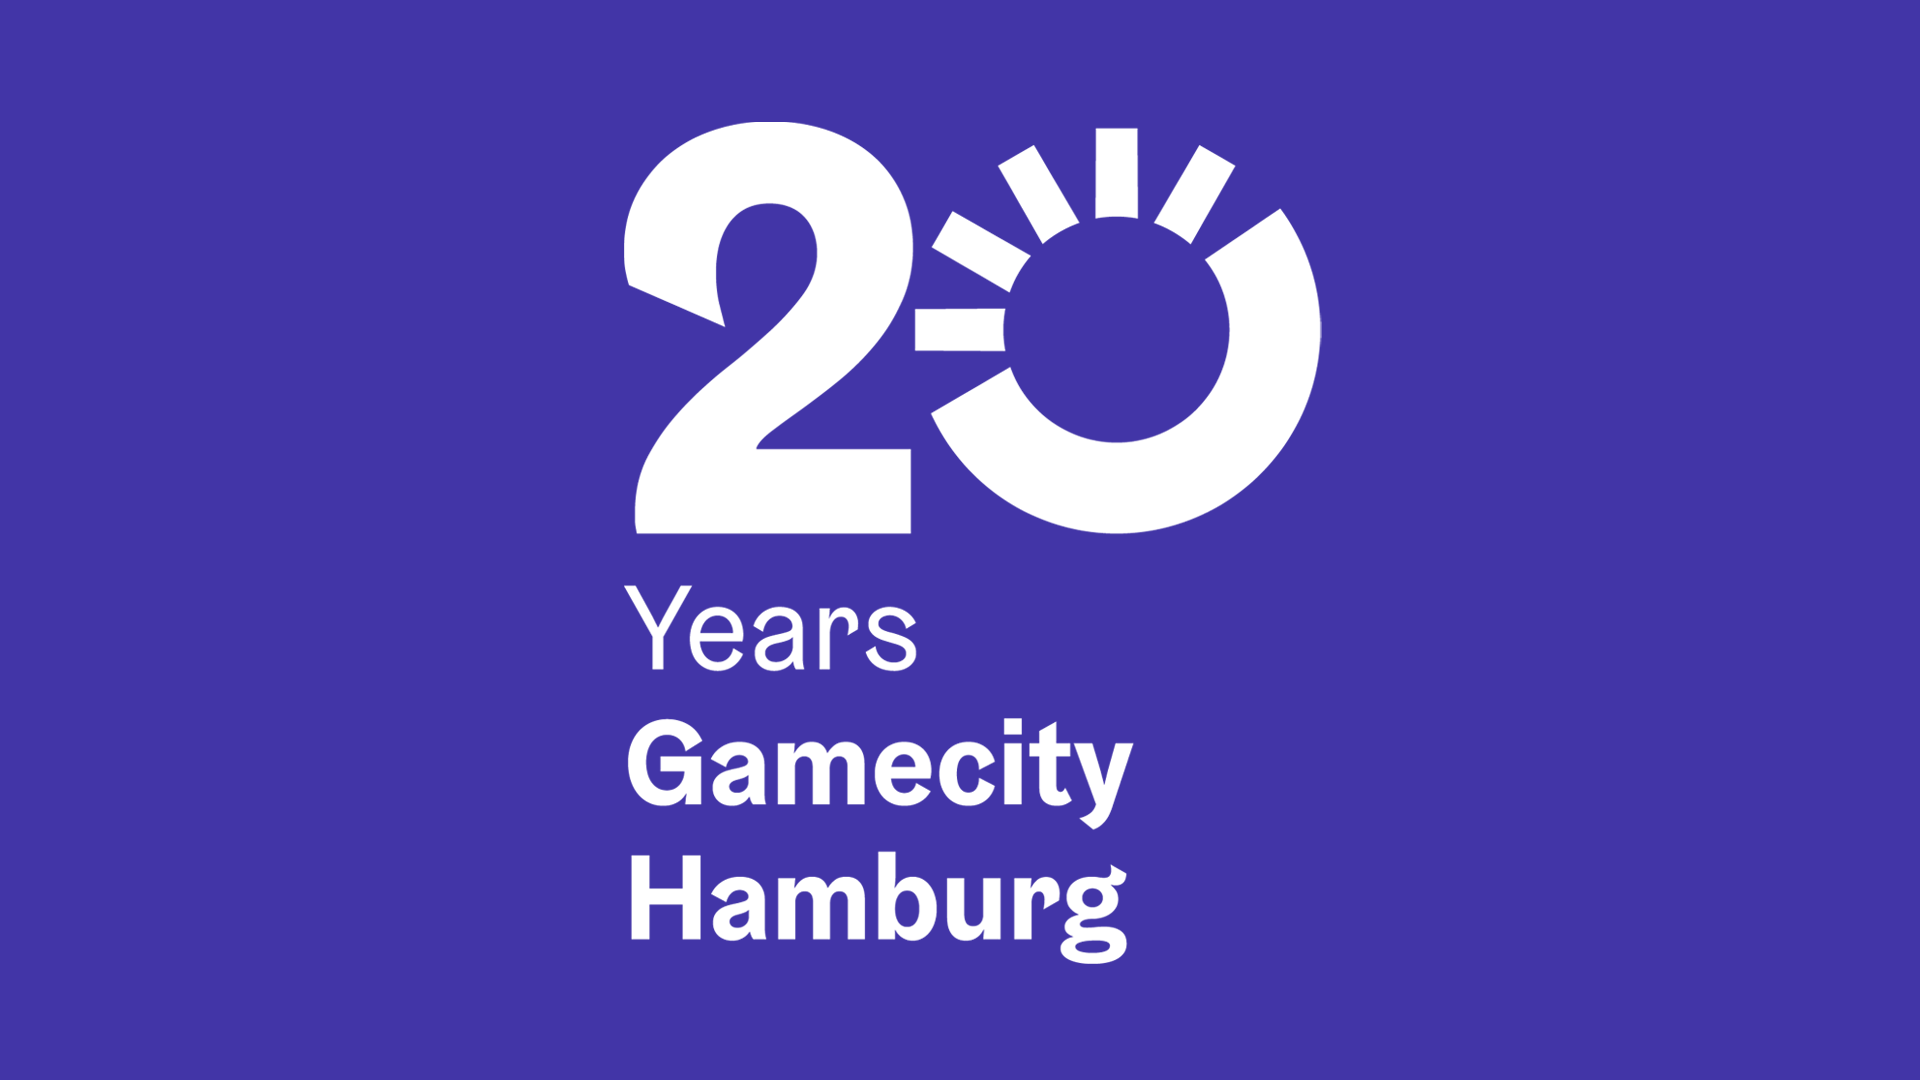 20 years of Gamecity Hamburg - 